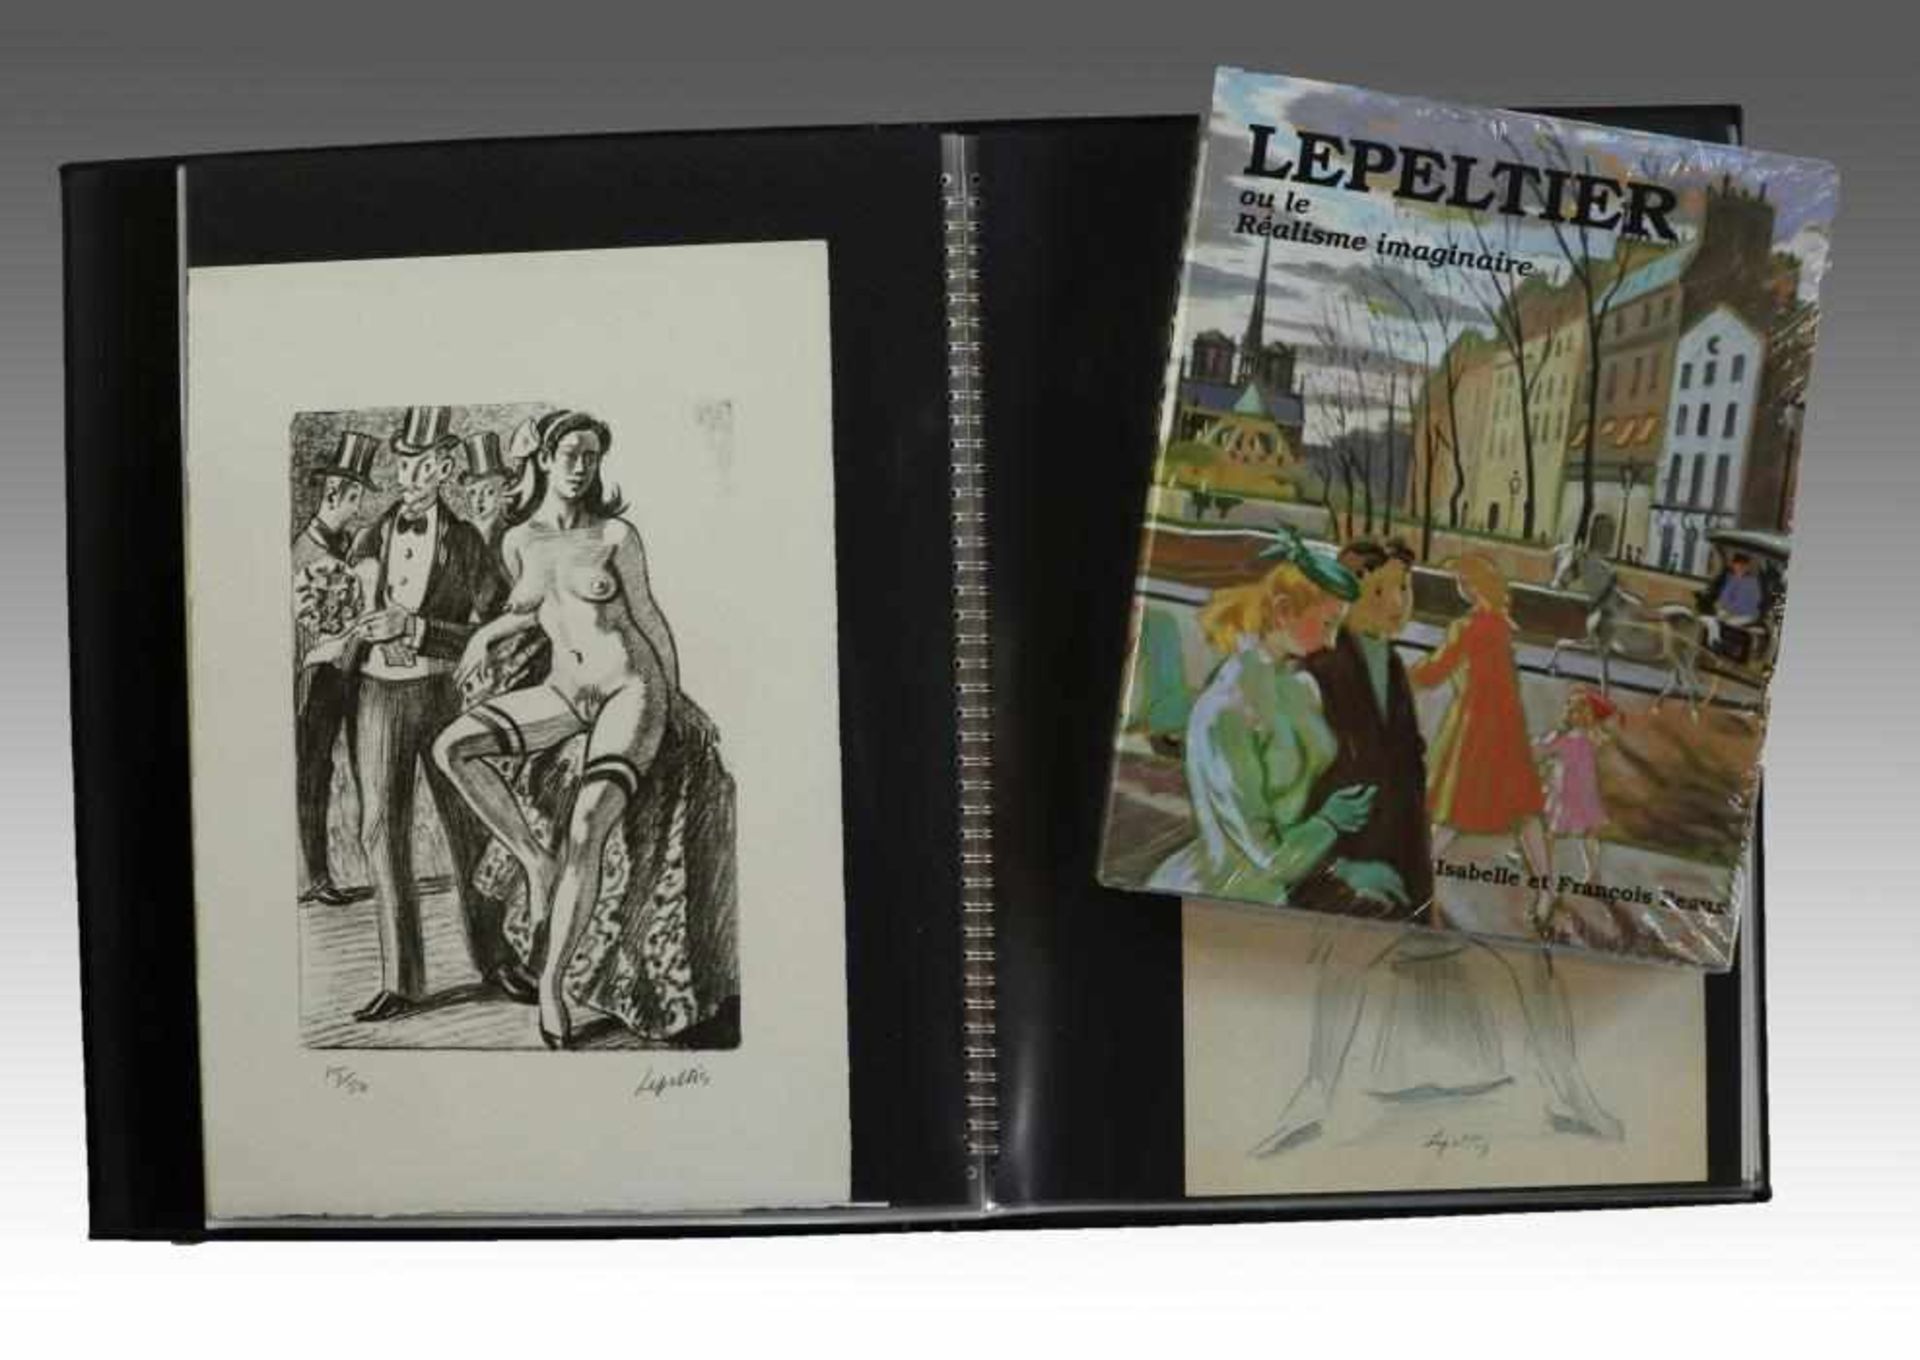 Lepeltier, Robert1913 Paris - 1996, Mappe m. 31 Zeichnungen/Mischtechniken/Lithos., Bleistift, - Bild 4 aus 6